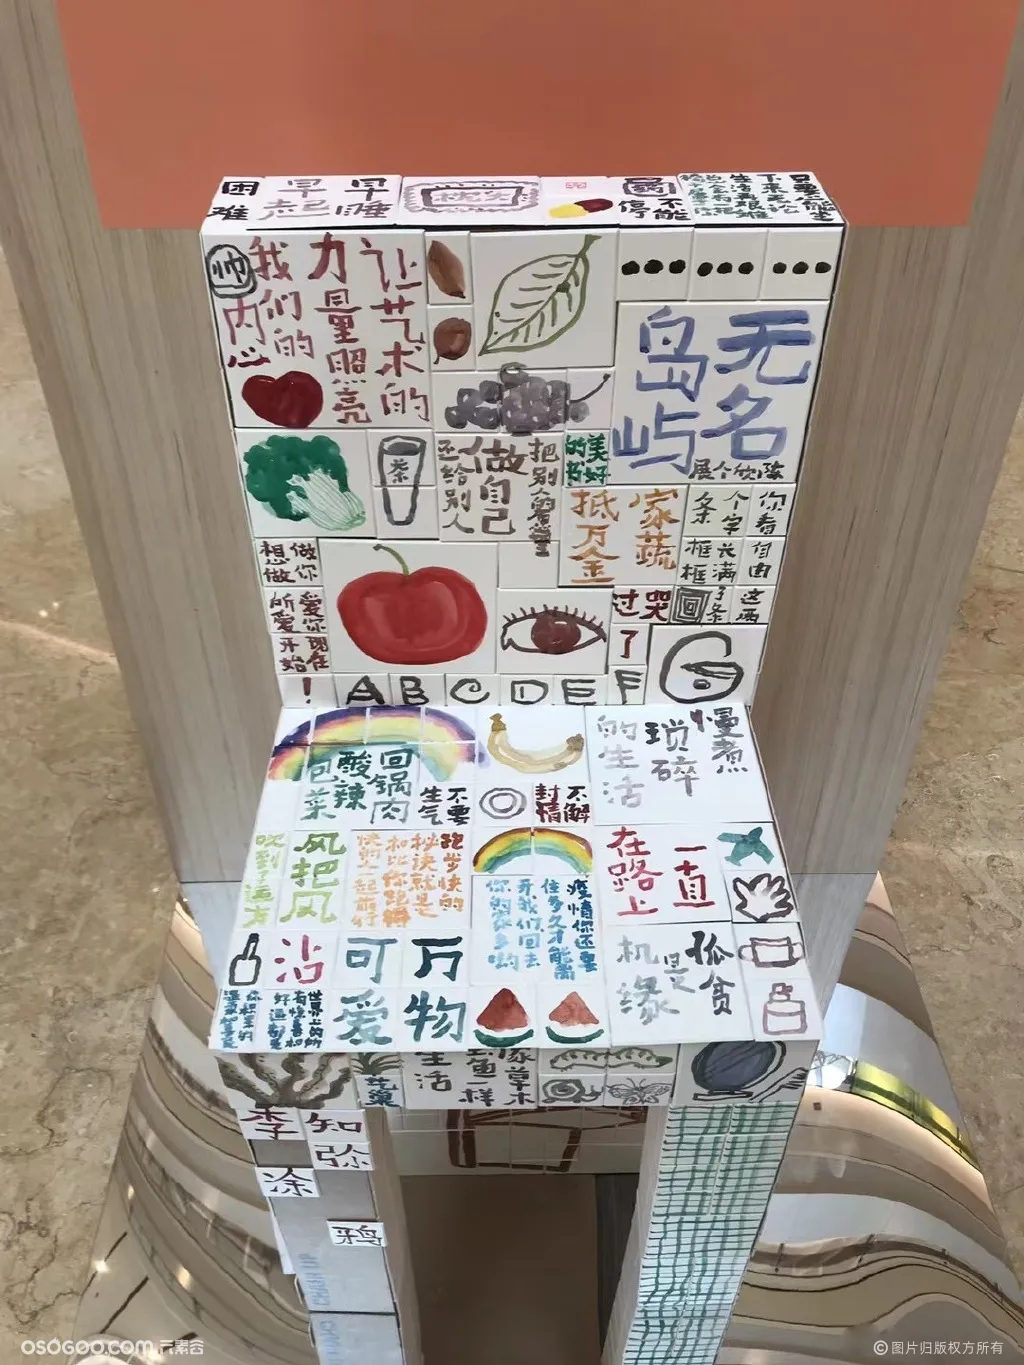  上海Chair up 公共艺术展